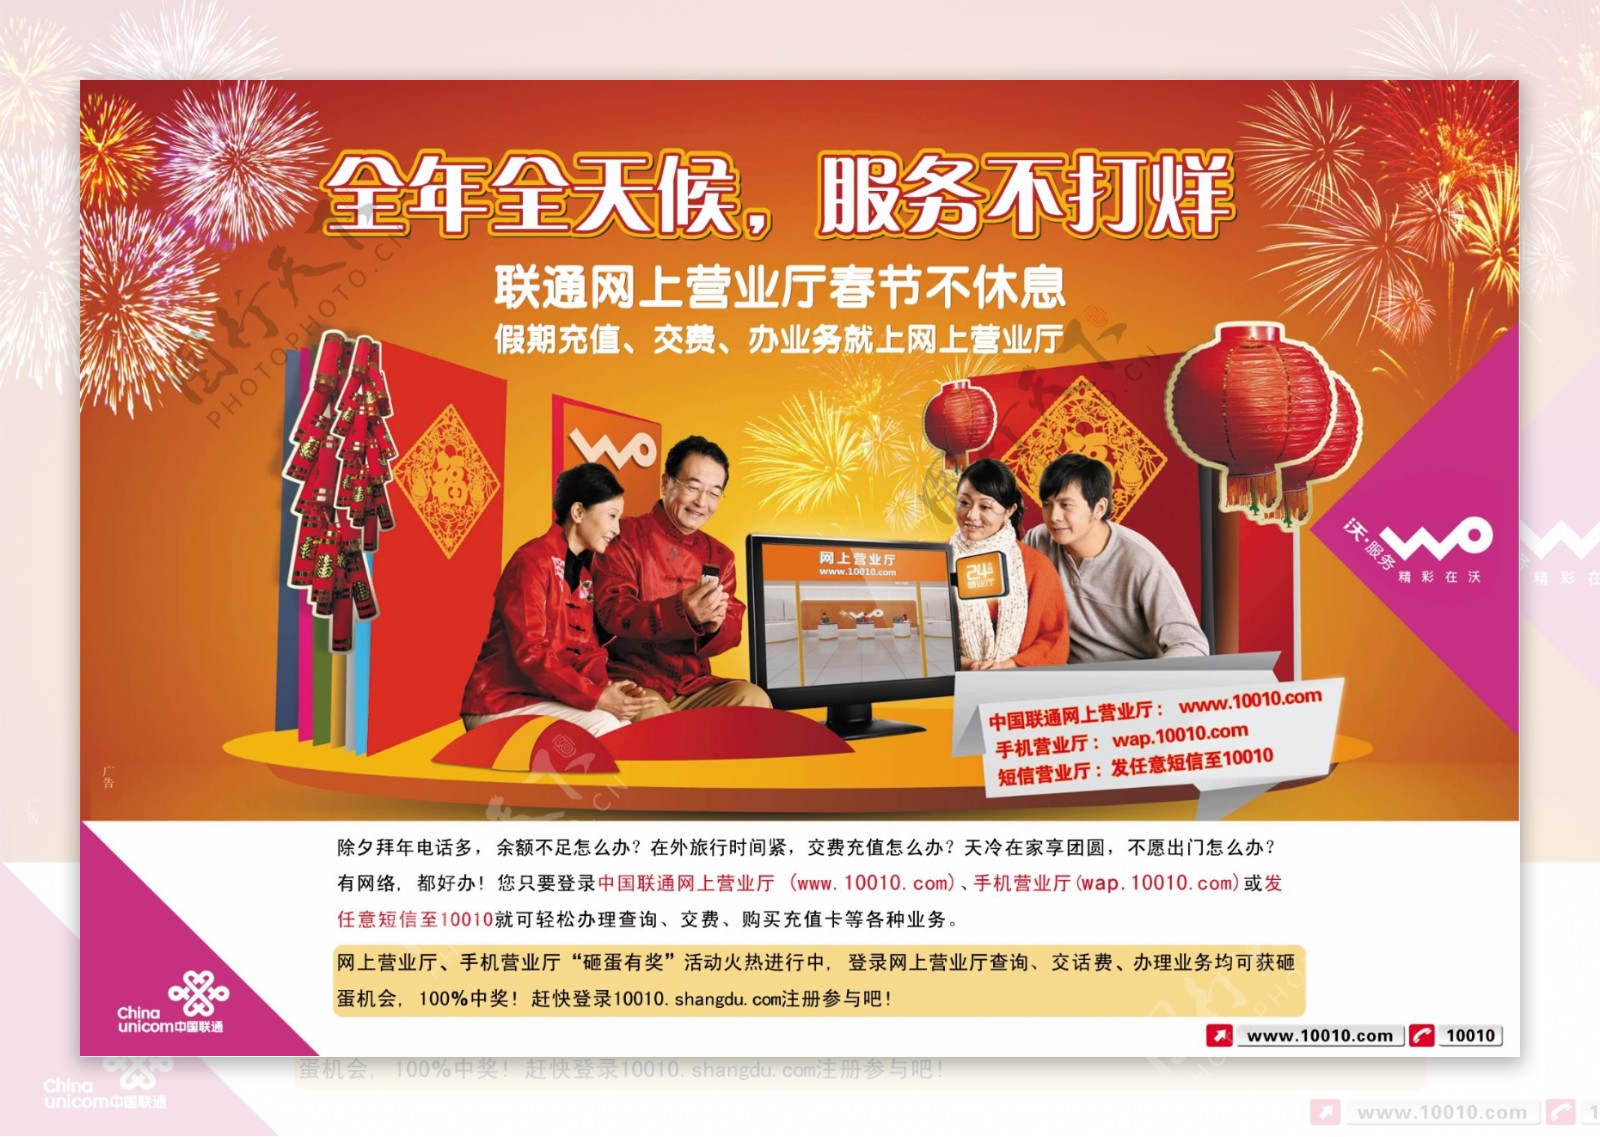 中国联通春节宣传海报底图未分层图片